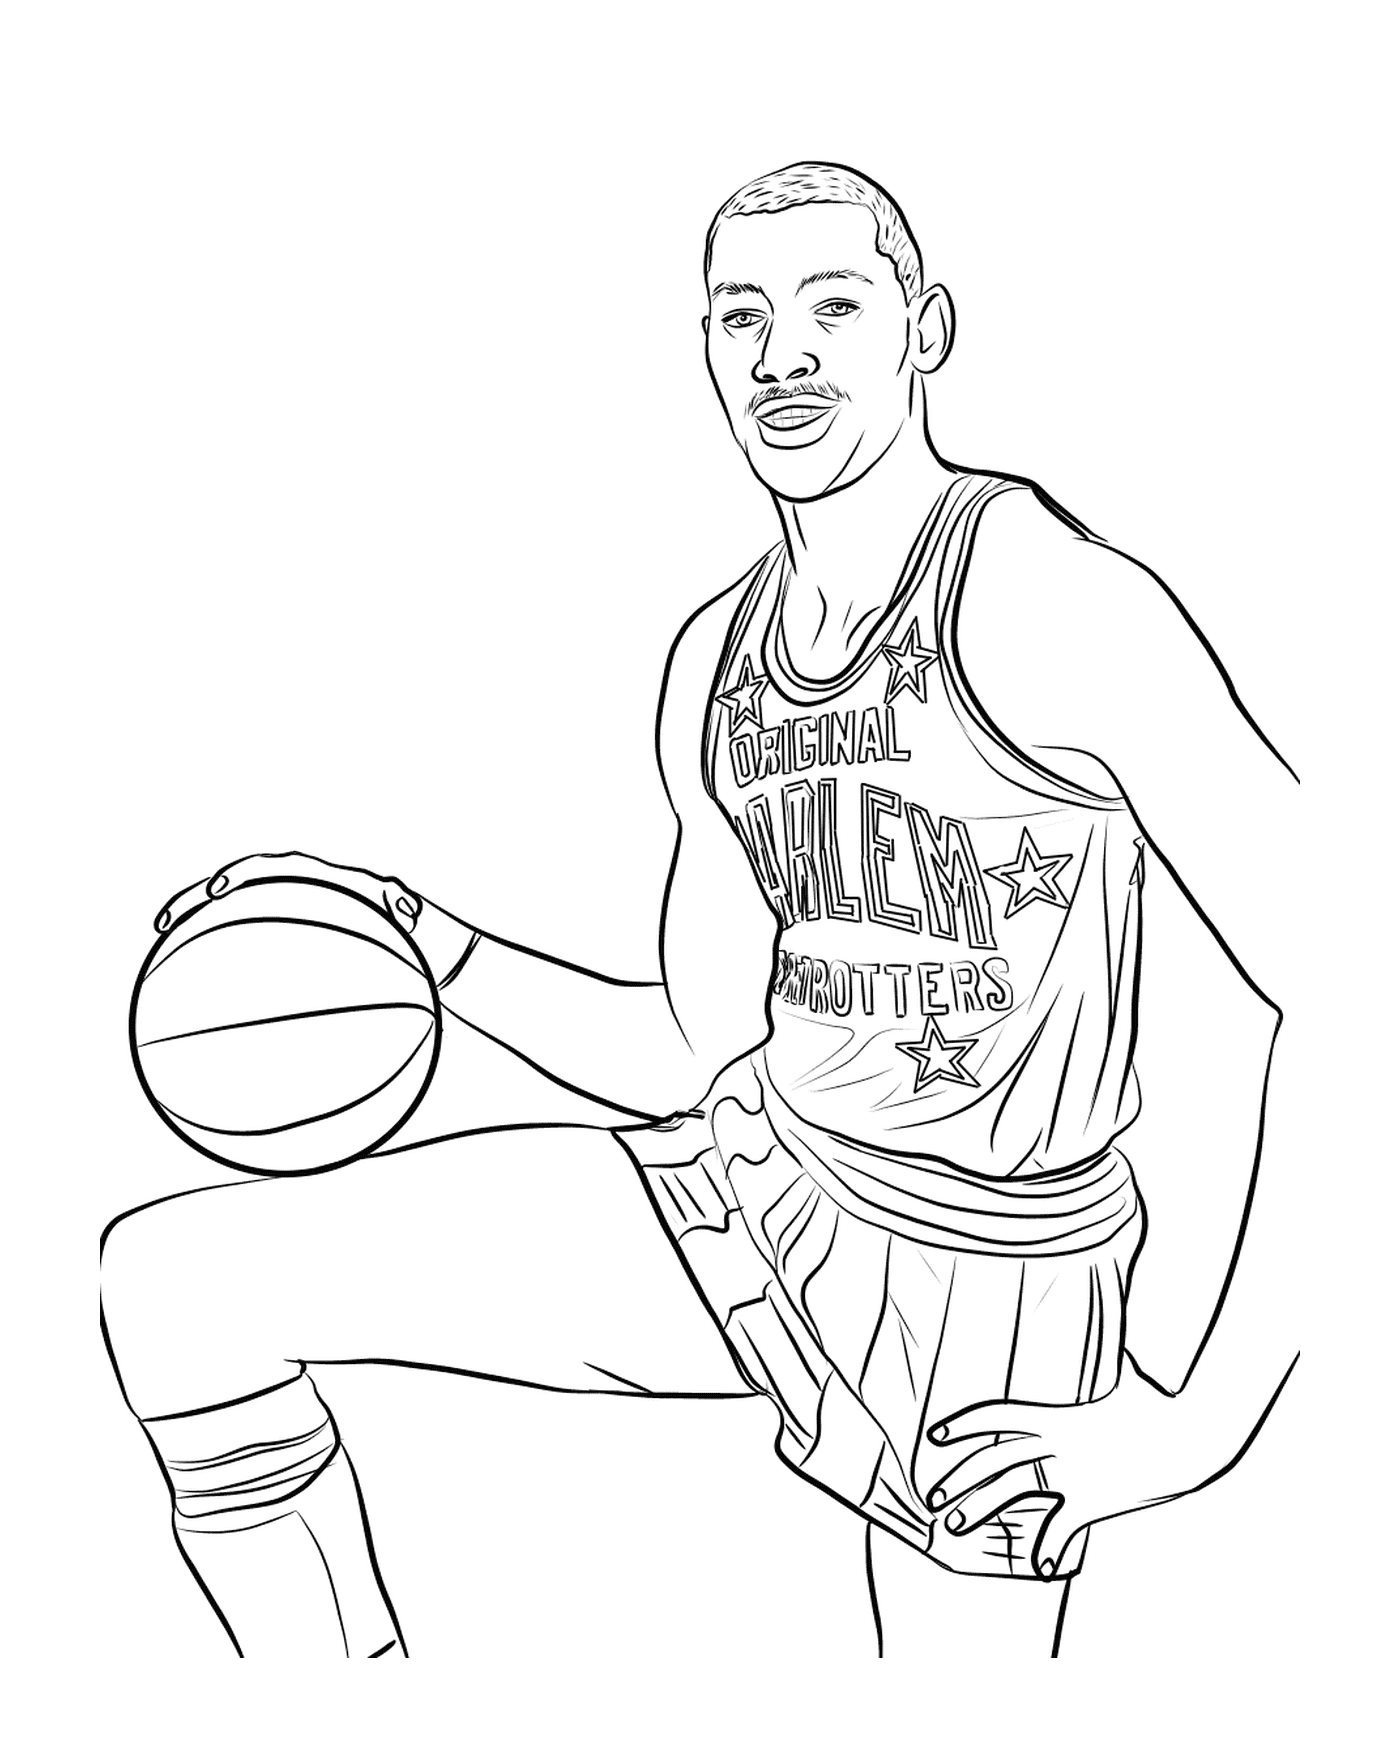  Wilt Chamberlain, jugador de baloncesto 